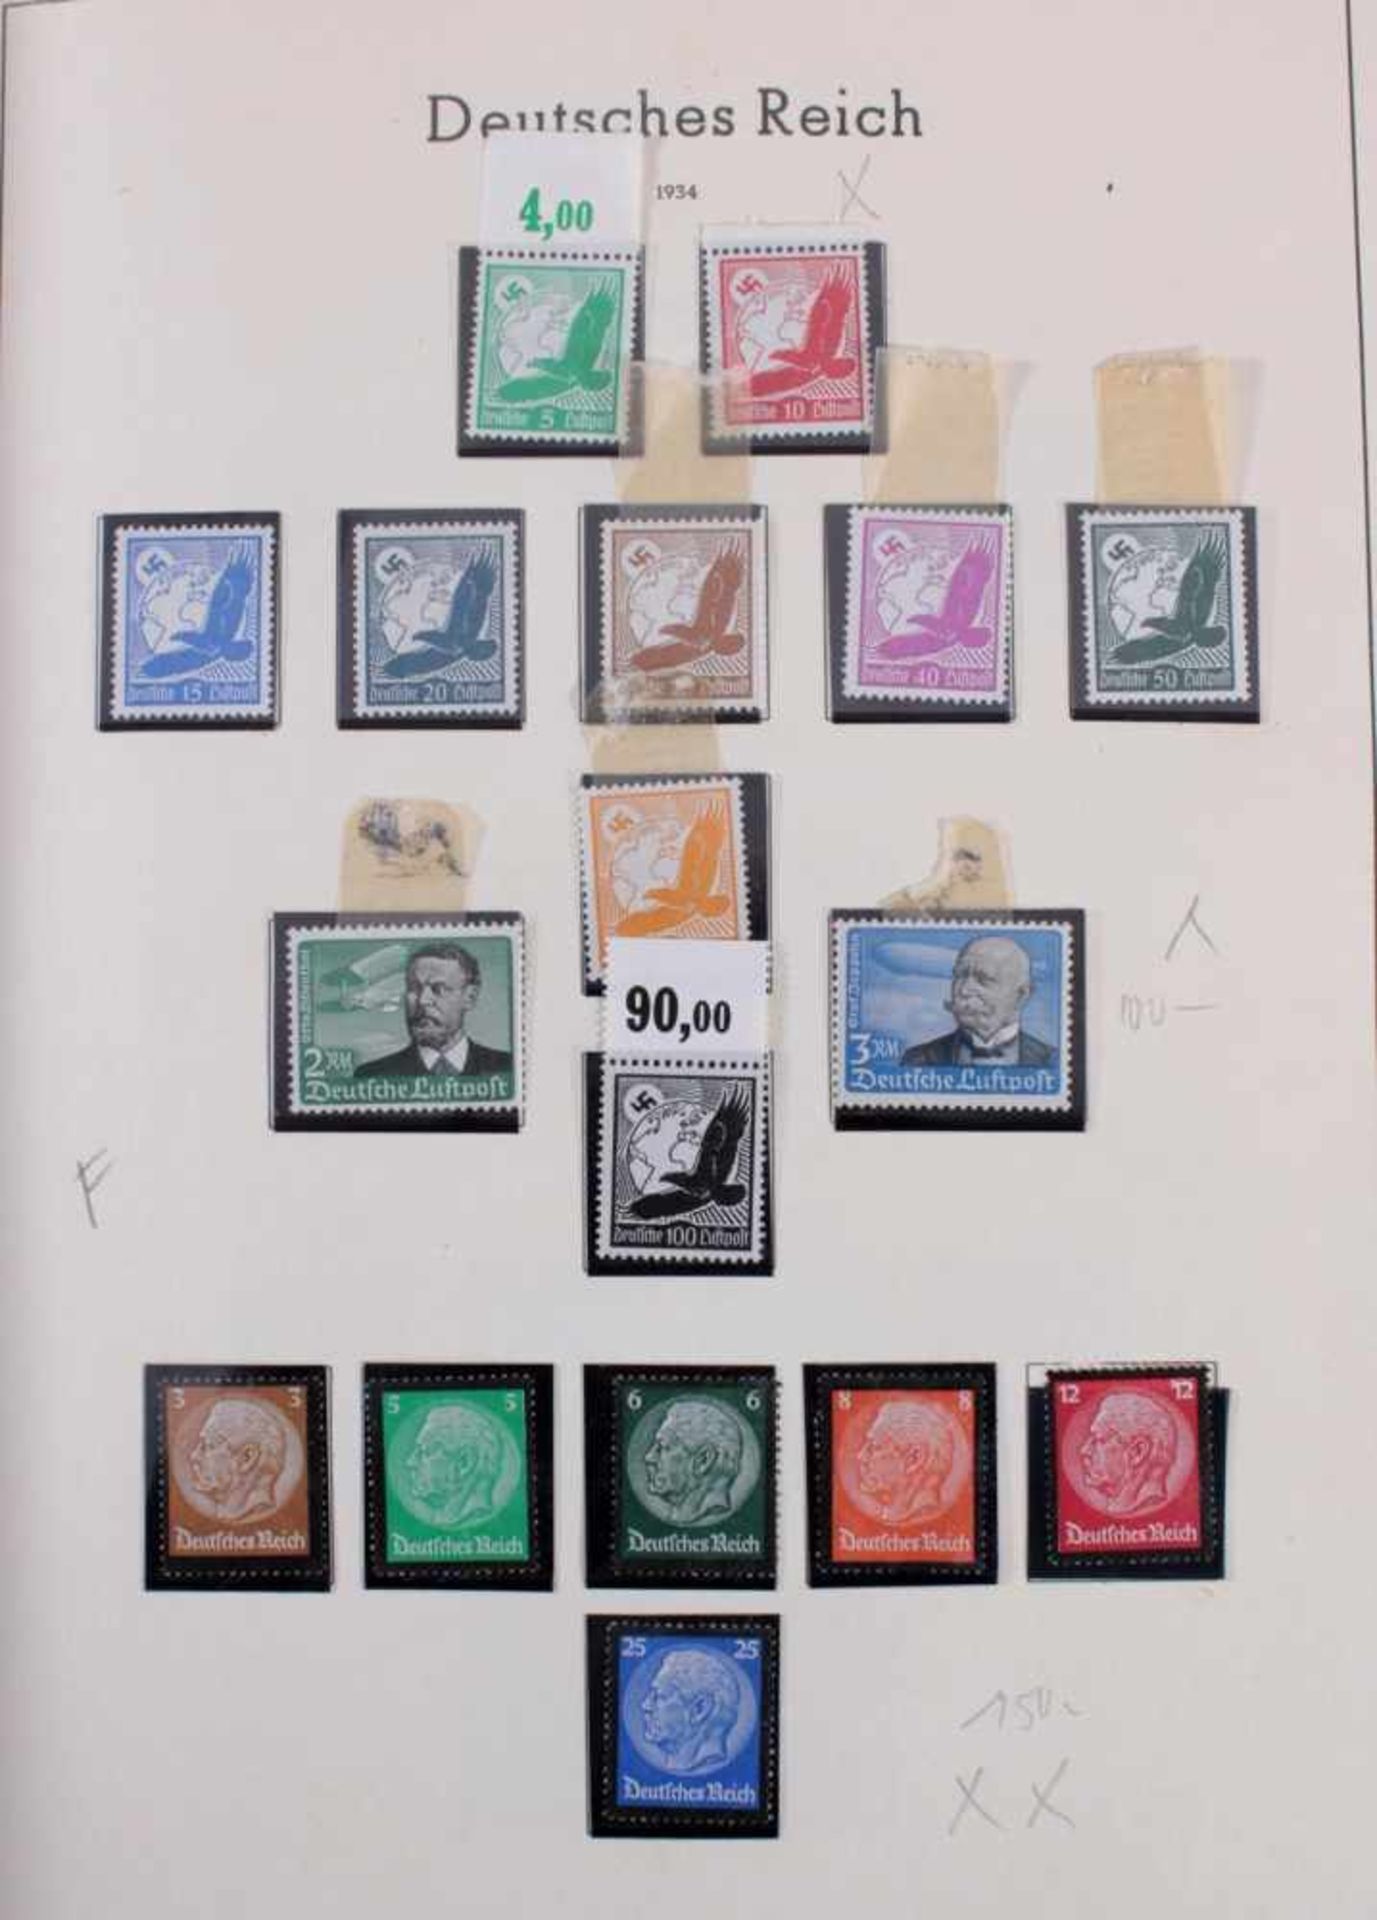 Sammlung Deutsches Reich 1933-1945 mit Nebengebieten, Postfrisch / ungebrauchtDeutsches Reich in den - Bild 4 aus 36